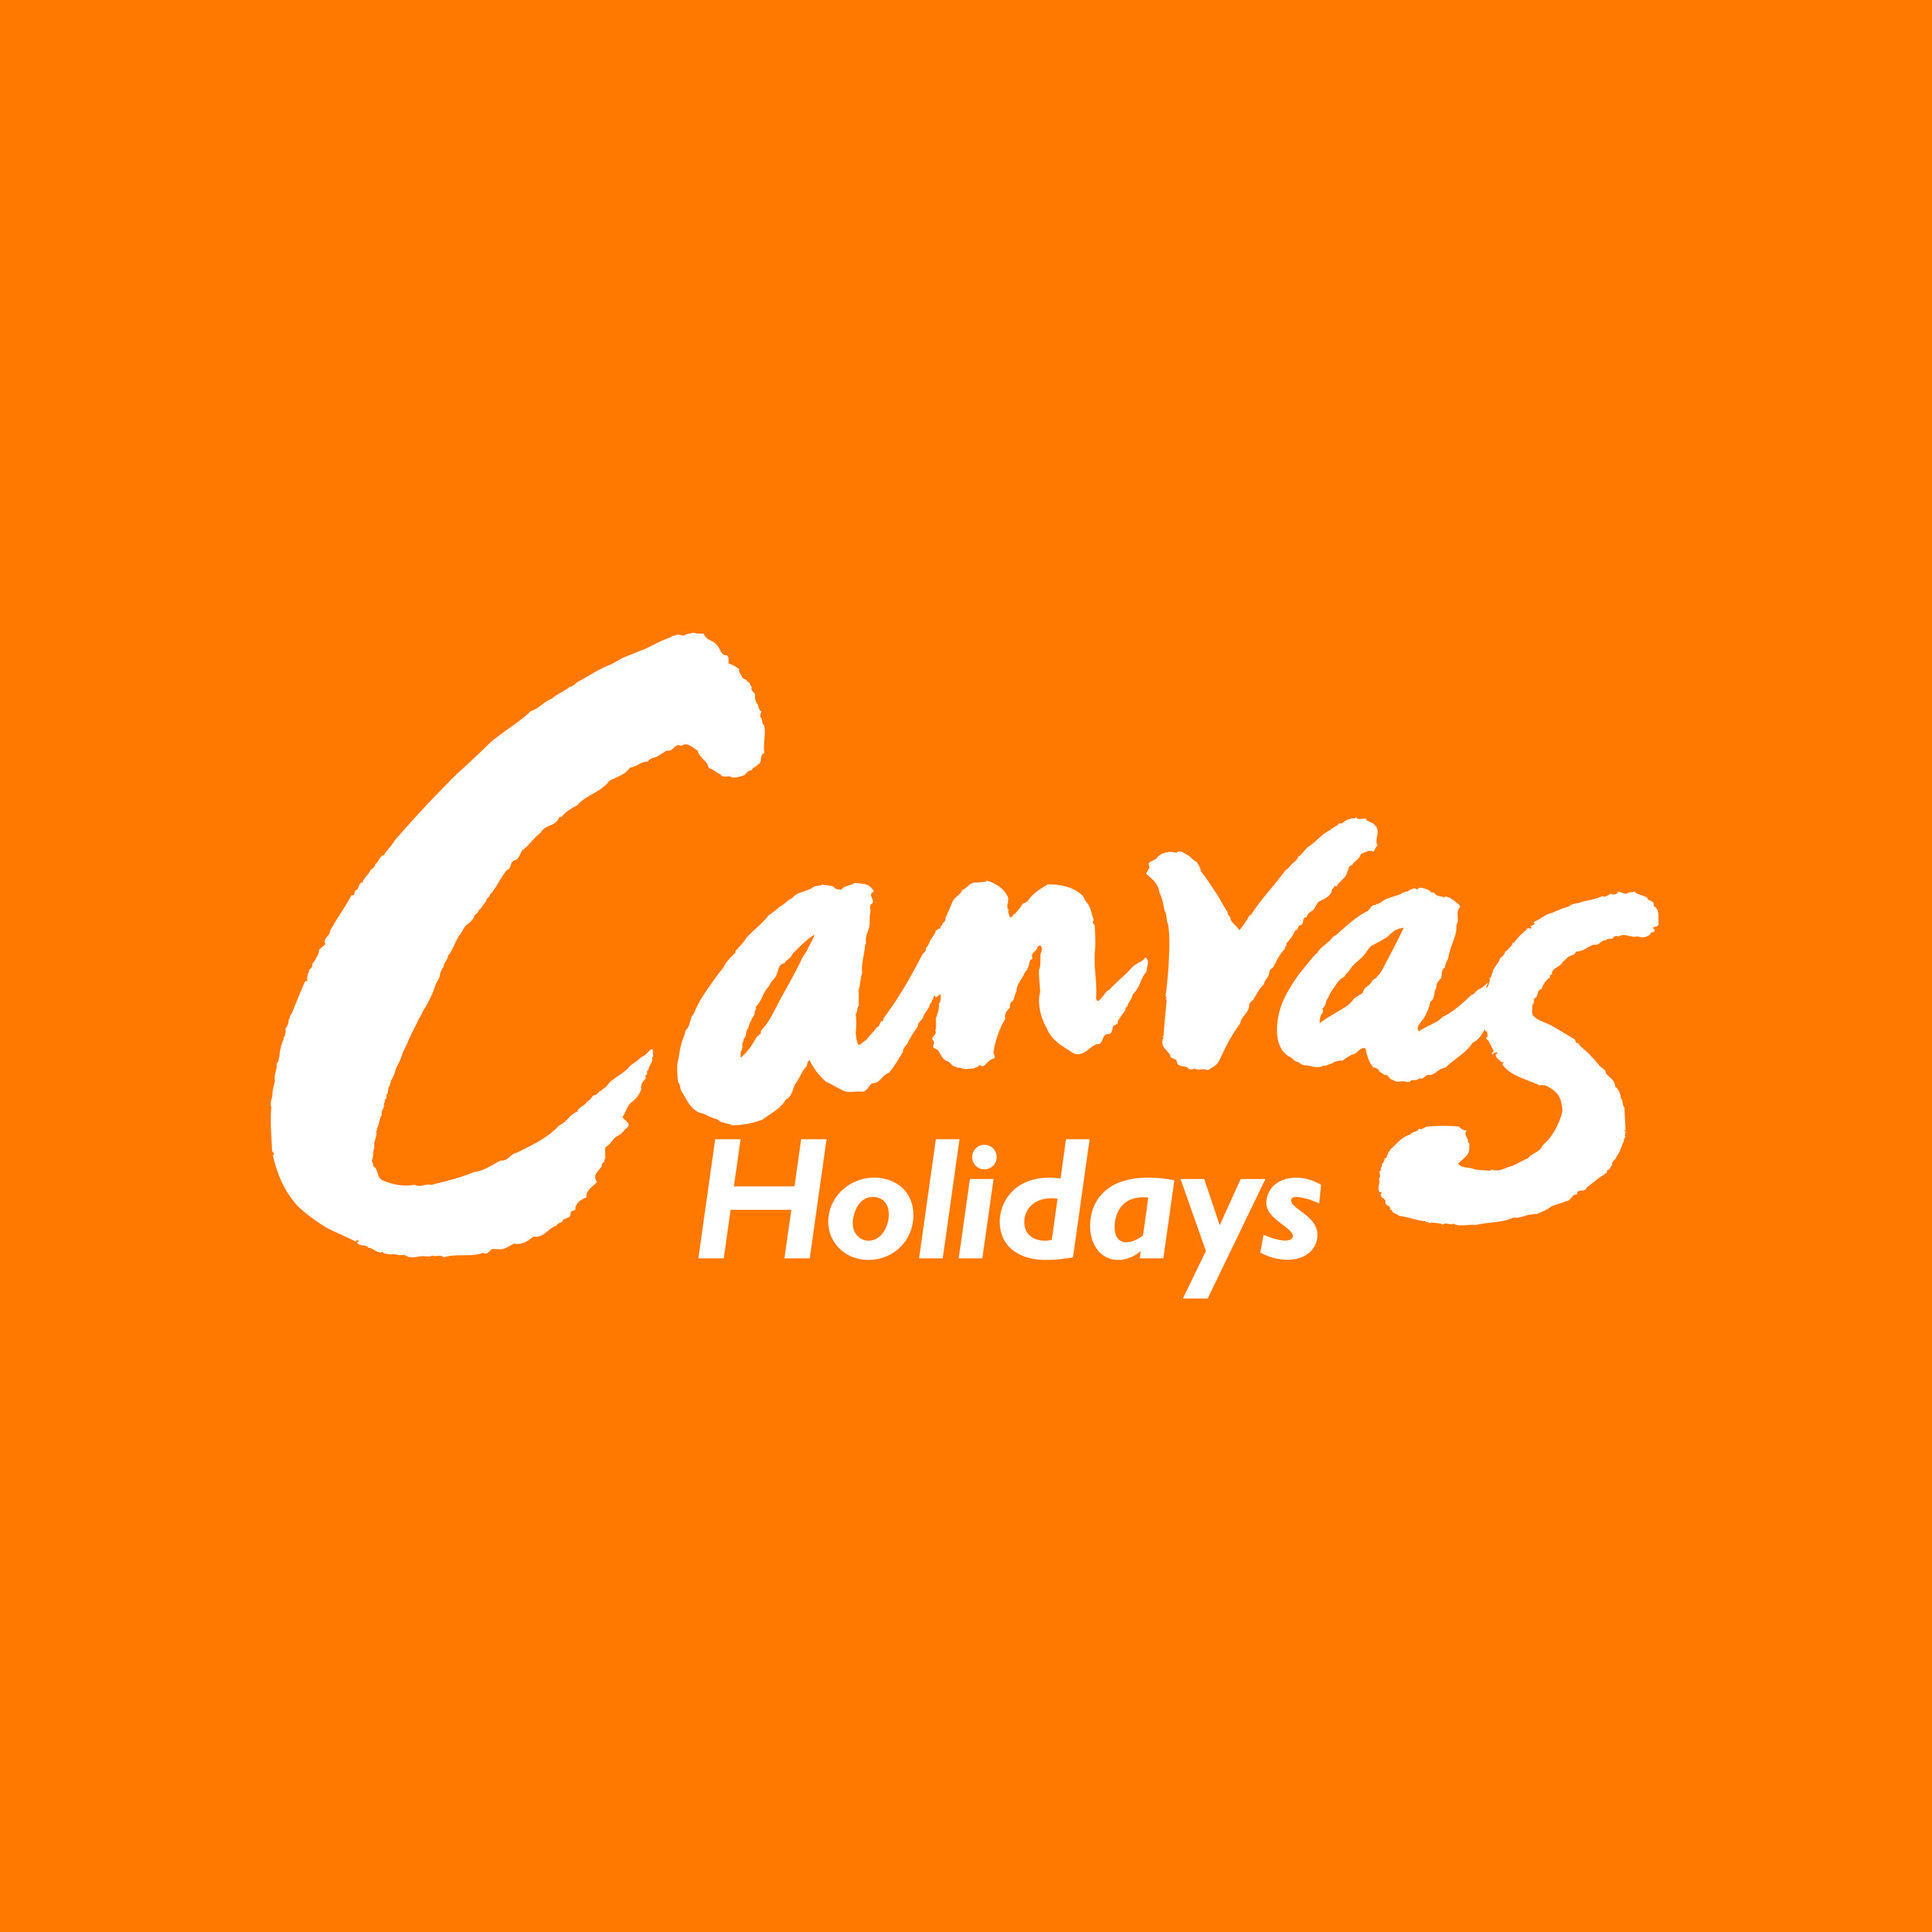 White On Orange Logo - Canvas Holidays white on orange logo - JuggleMum